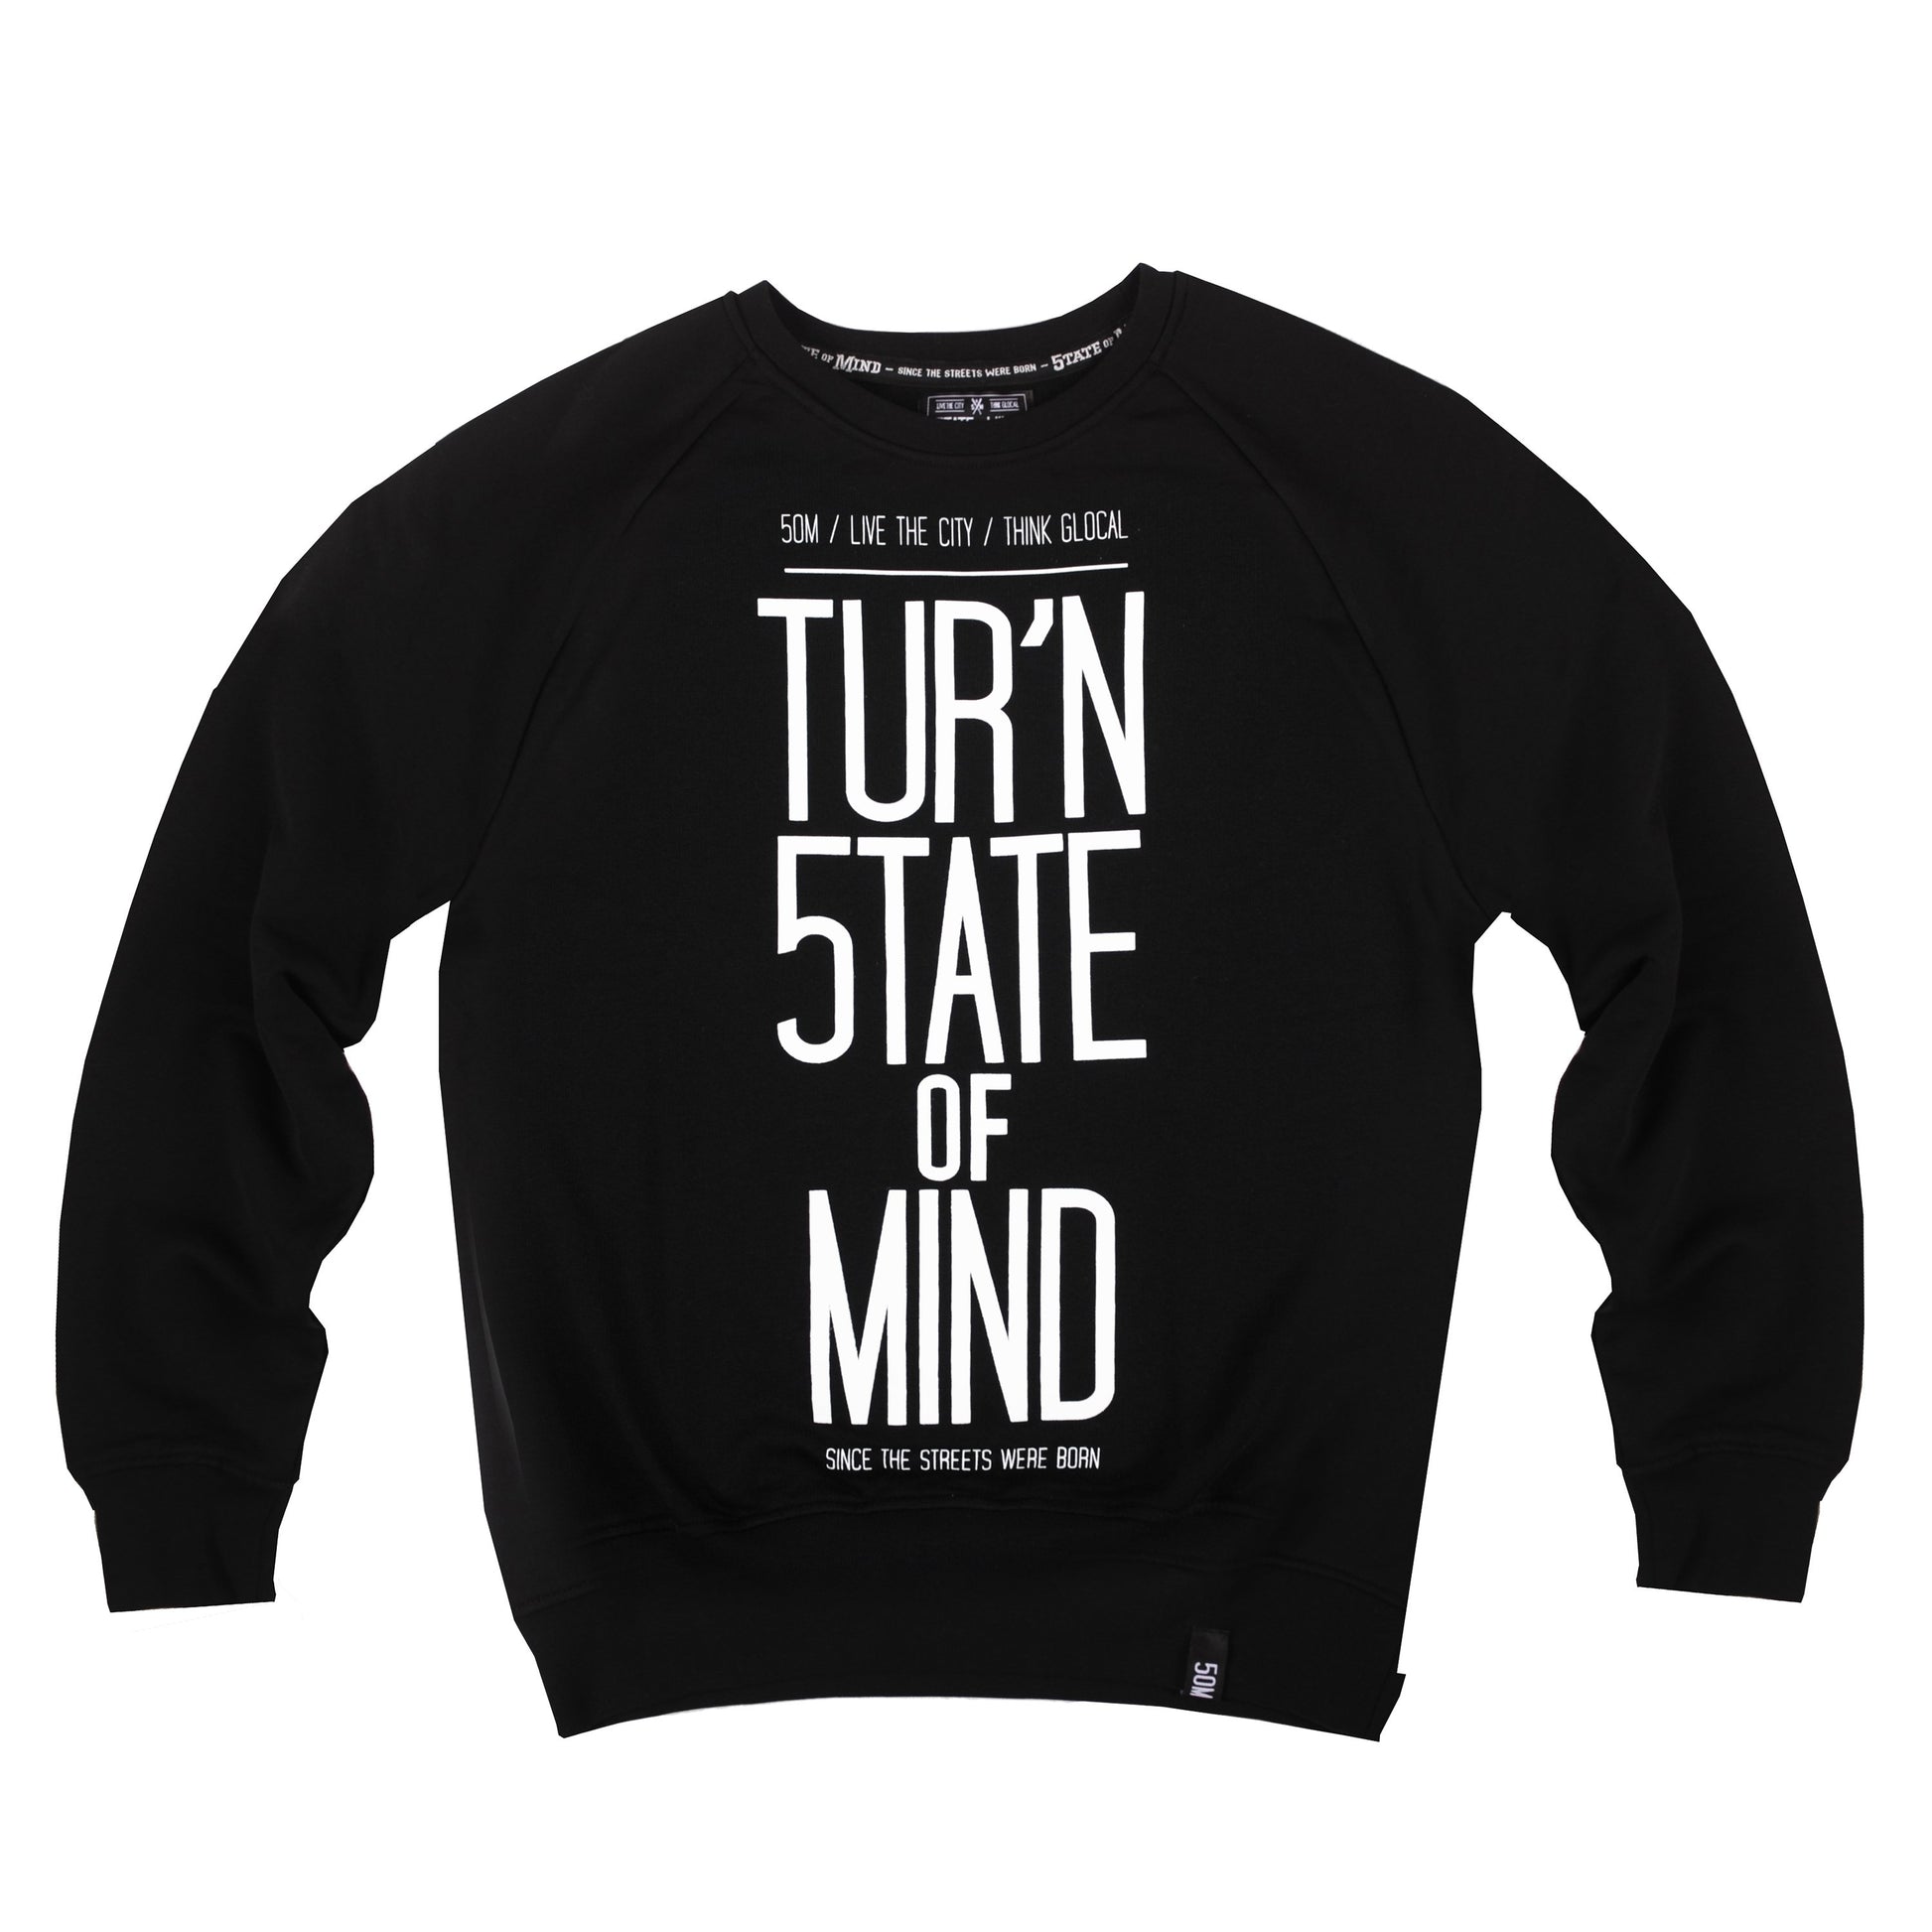 "TUR'N 5OM" <br /> sweatshirt black